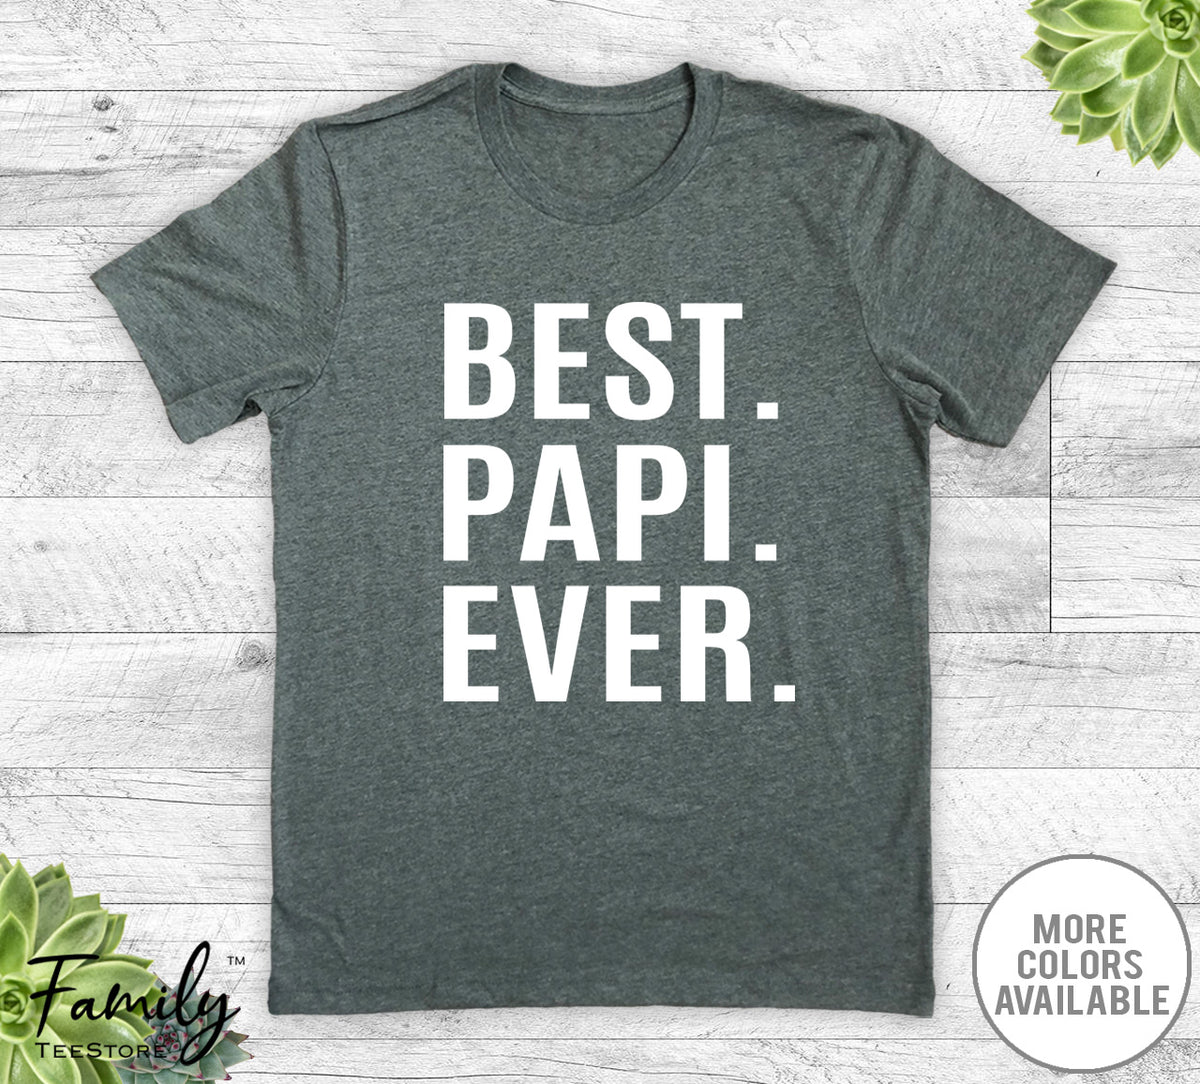 Best Papi Ever - Unisex T-shirt - Papi Shirt - Papi Gift - familyteeprints